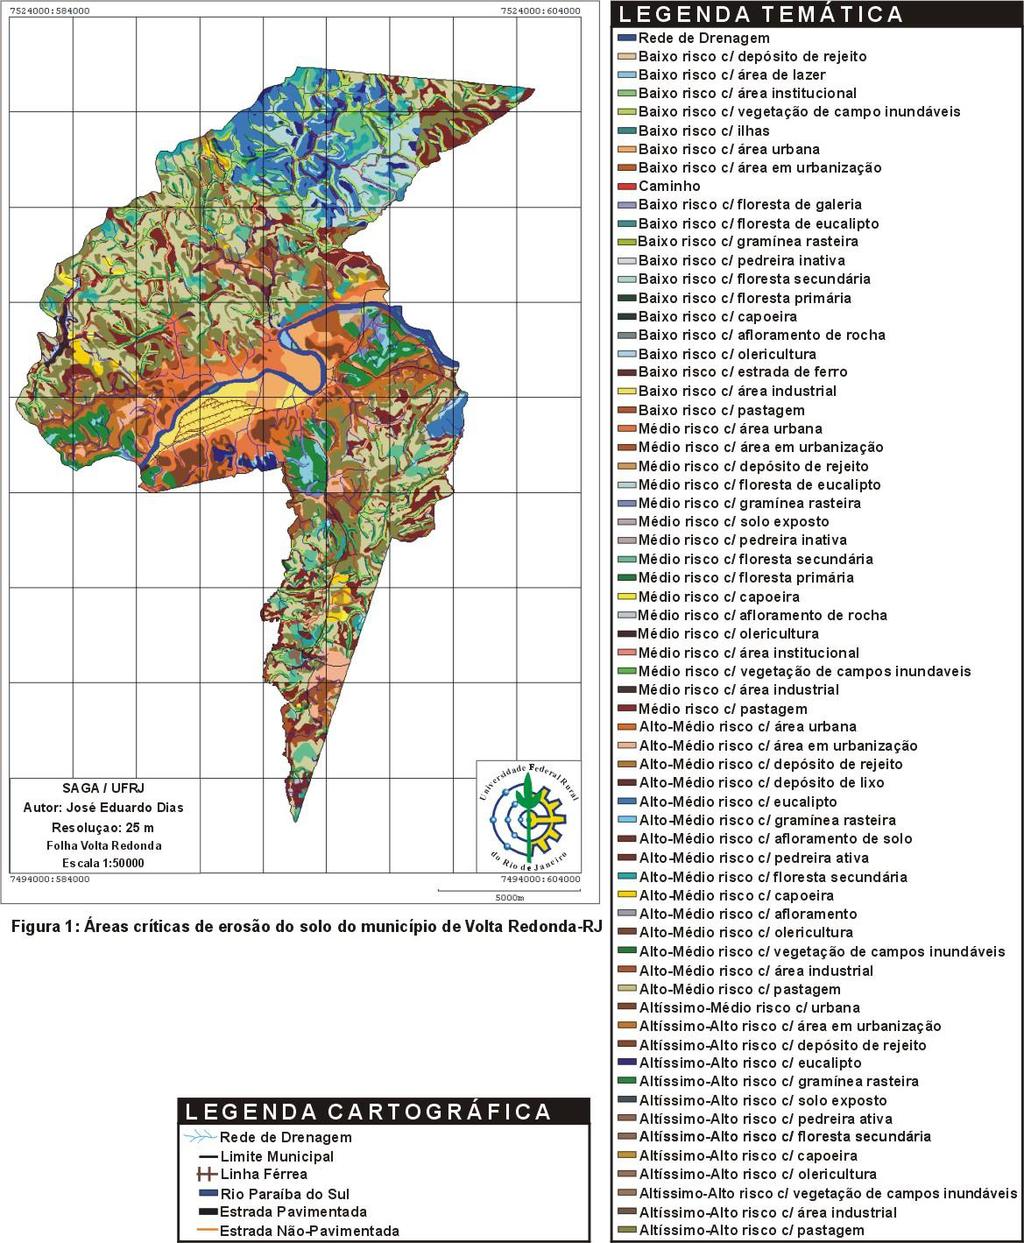 Áreas críticas de erosão do solo no municipio de Vermelho-Amarelo associada às unidades geomorfológicas Patamares Colinosos Aplainados, Interflúvios Aplainados e Patamares Tabuliformes Dissecados.